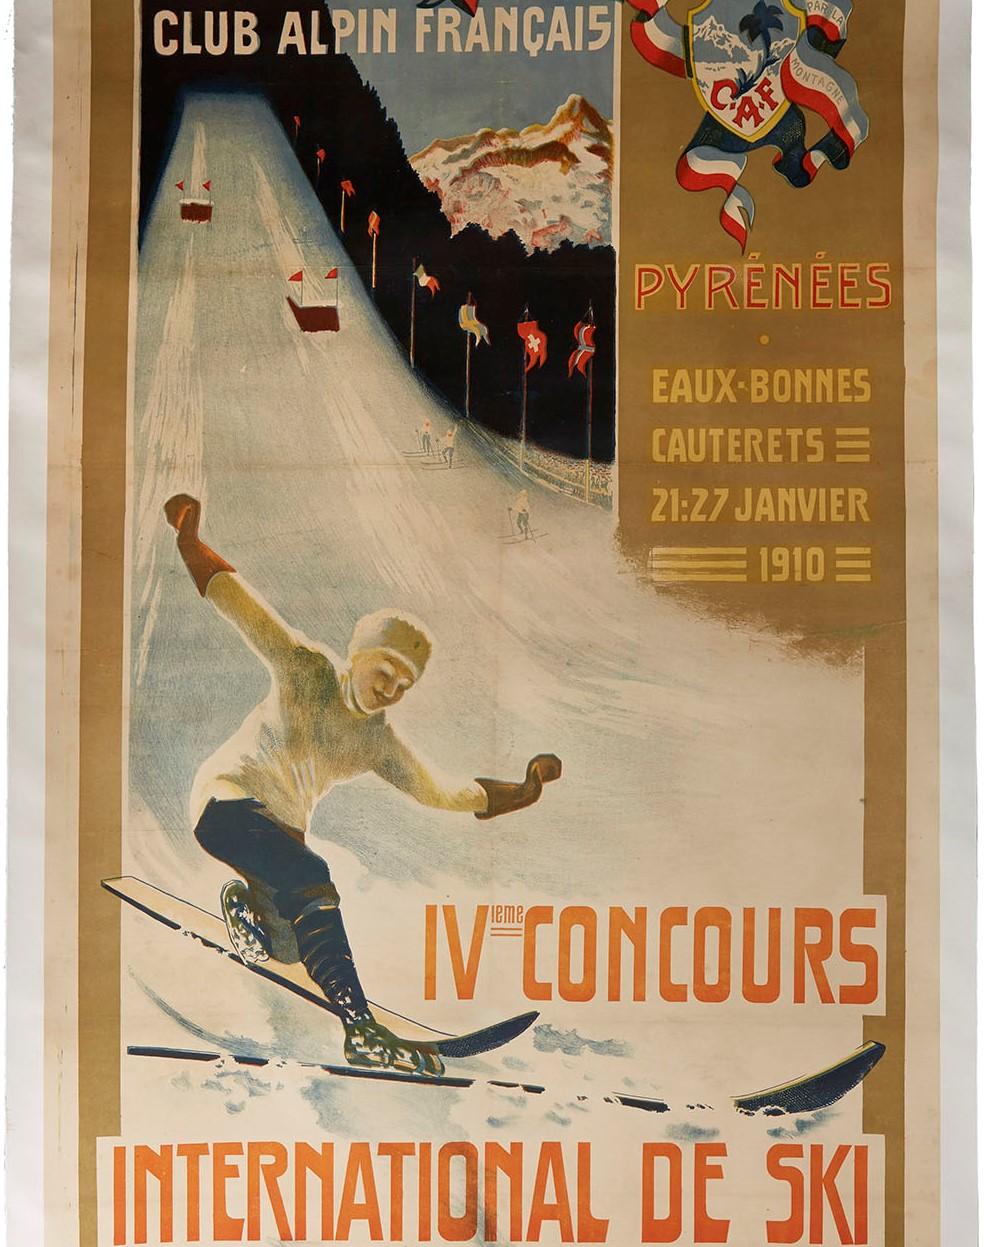 Originales antikes Wintersportplakat für den 4. Internationalen Ski-Wettbewerb, der vom französischen Alpenverein Alpin Francais (CAF; gegründet 1874), der vom 21. bis 27. Januar 1910 in den Pyrenäenorten Eaux Bonnes und Cauterets stattfand. Es